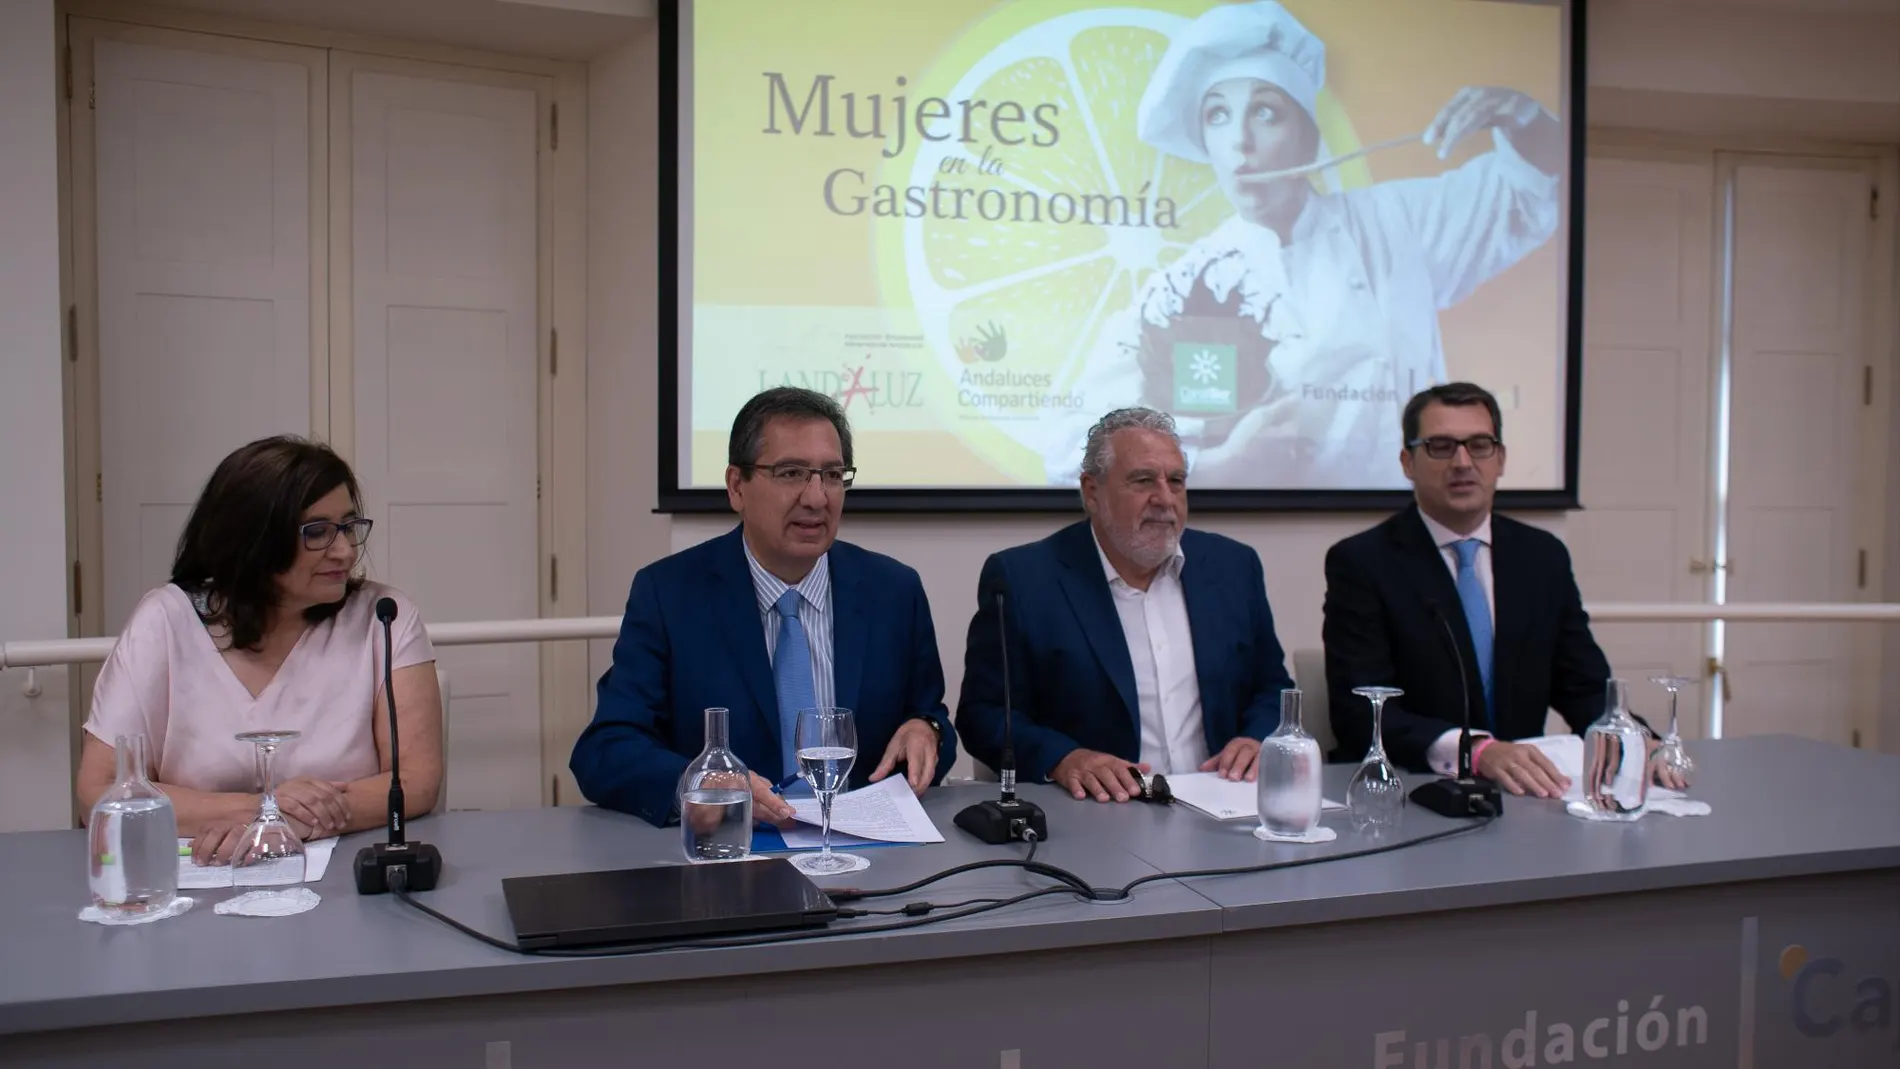 La Sala Salvador de la Fundación Cajasol ha acogido el lanzamiento de la campaña "Mujeres en la Gastronomía"